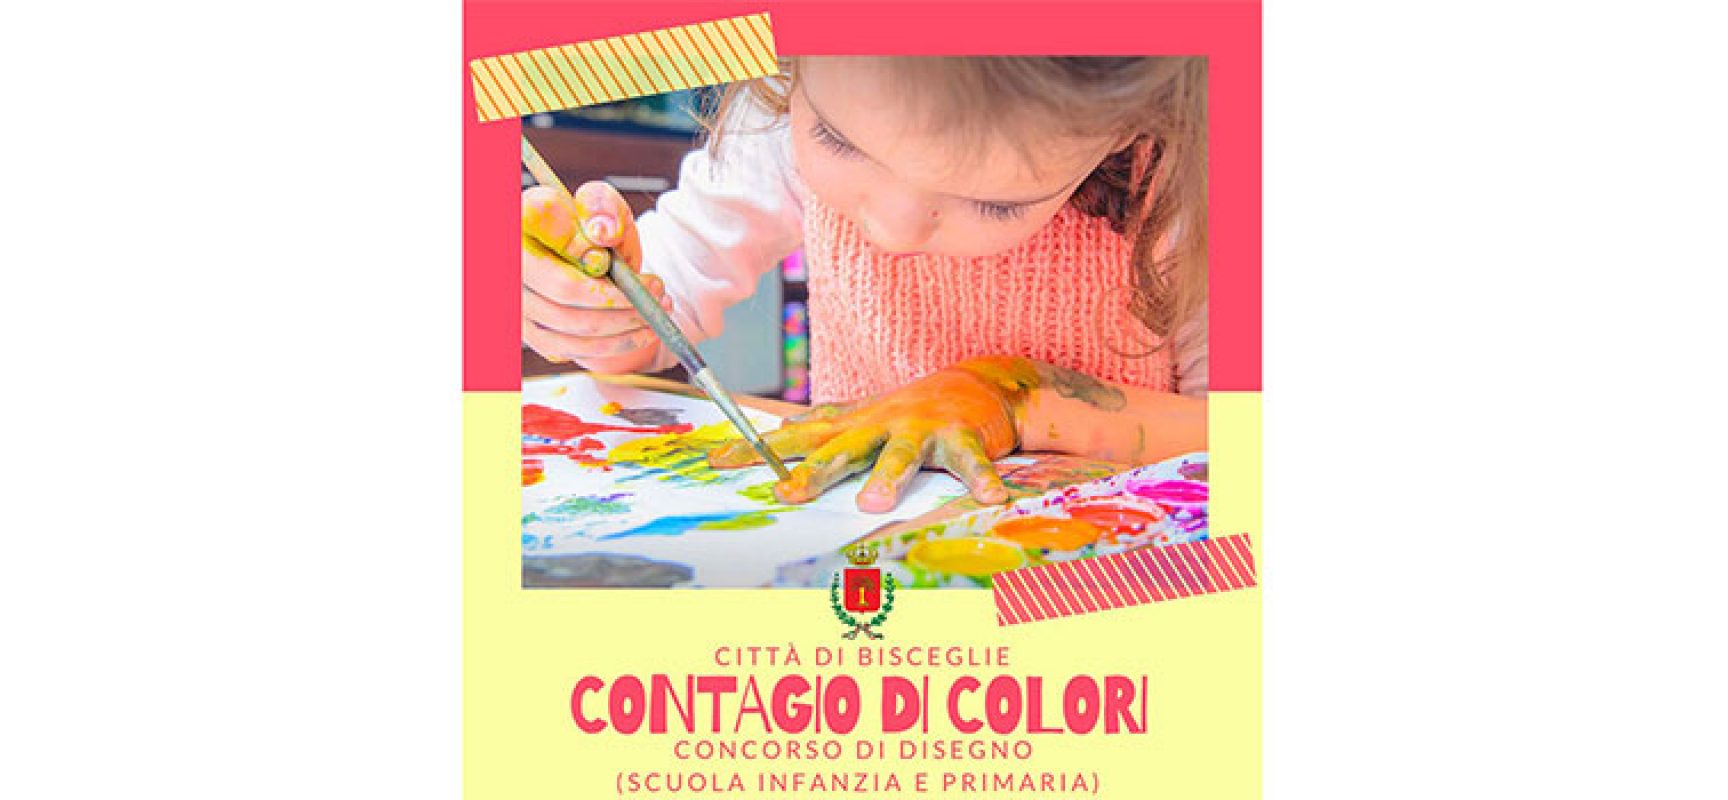 Prorogato al 31 maggio il concorso per bambini “Contagio di colori”